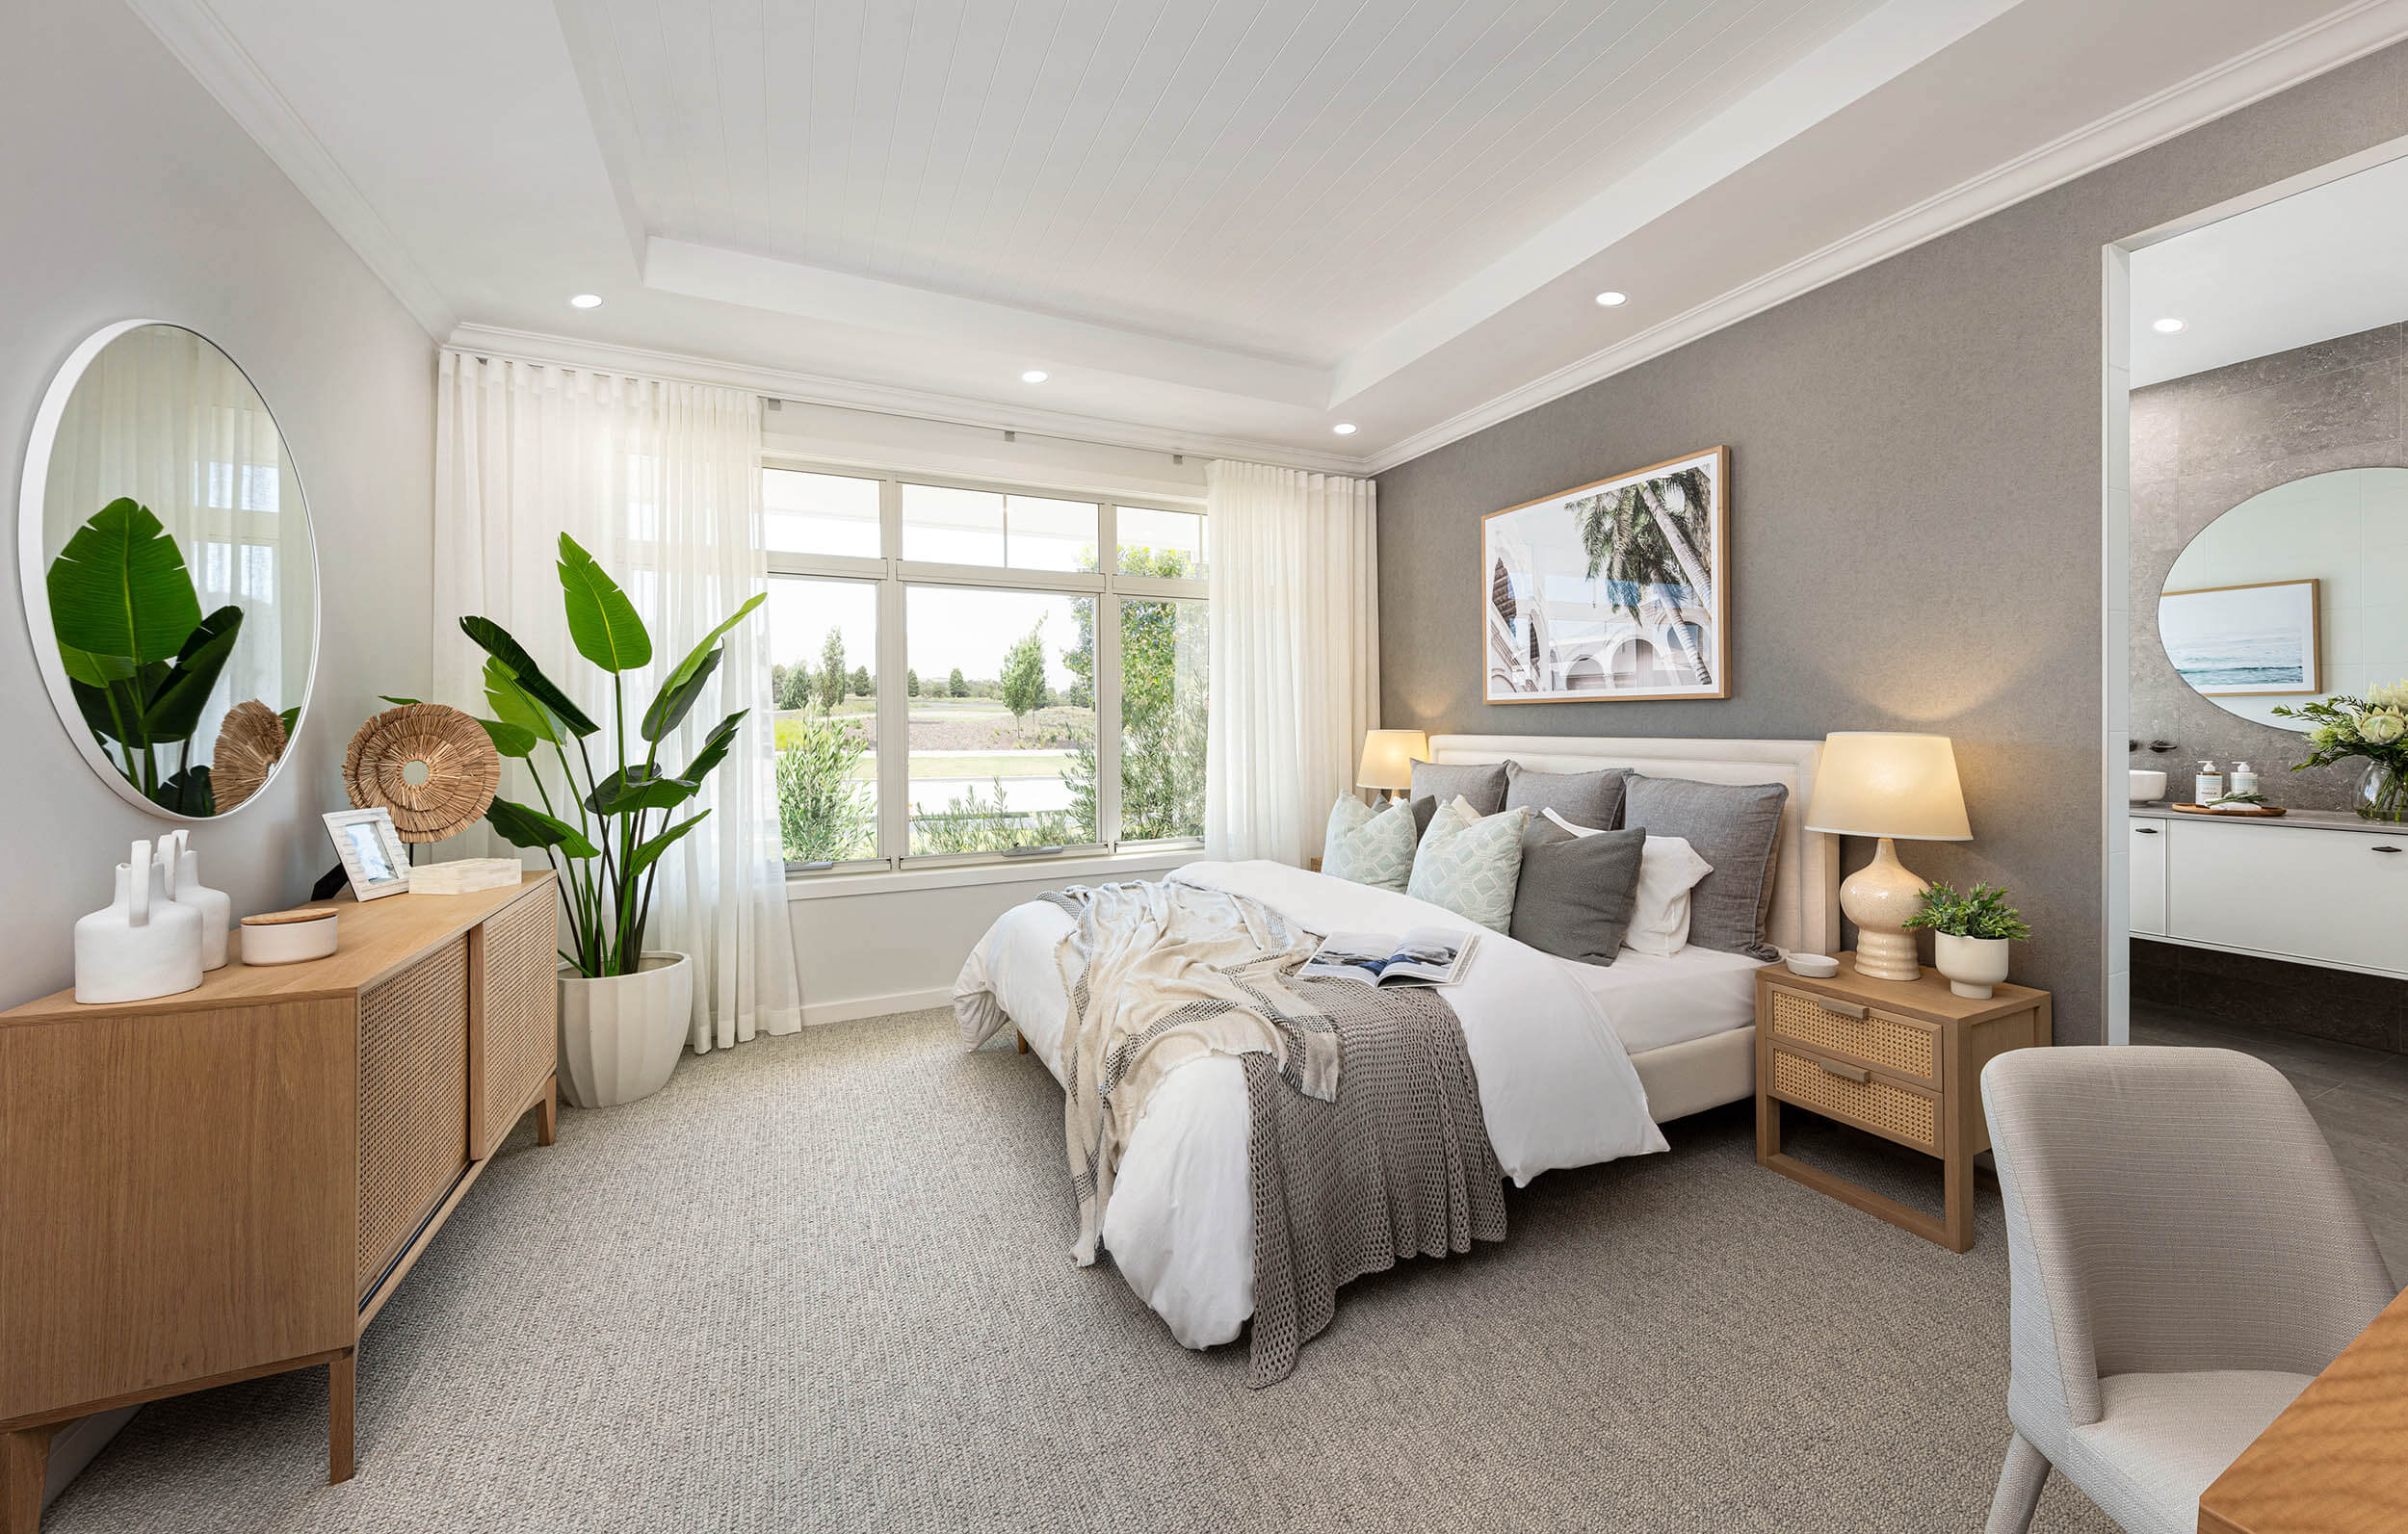 4 bedroom luxurious living floor plan